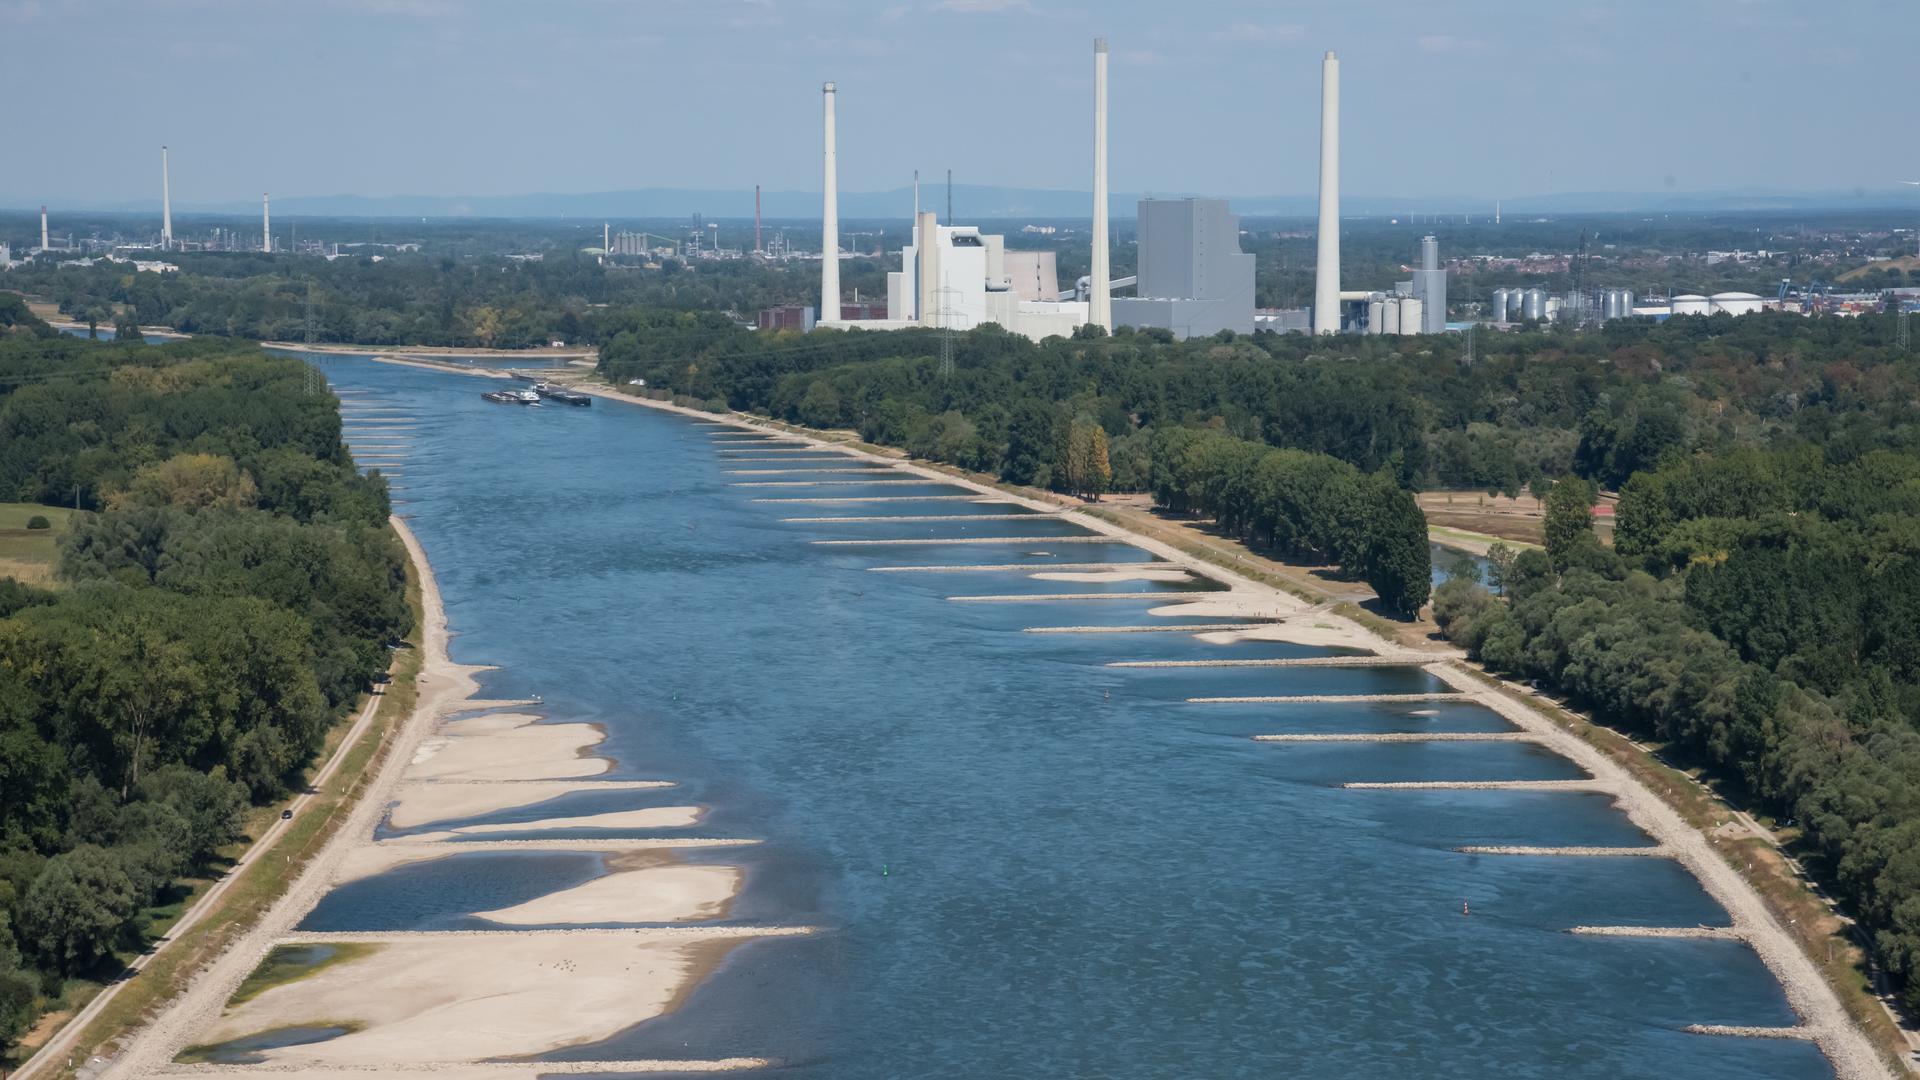 Blick auf das Kohlekraftwerk der EnBW im Rheinhafen bei Niedrigwasser